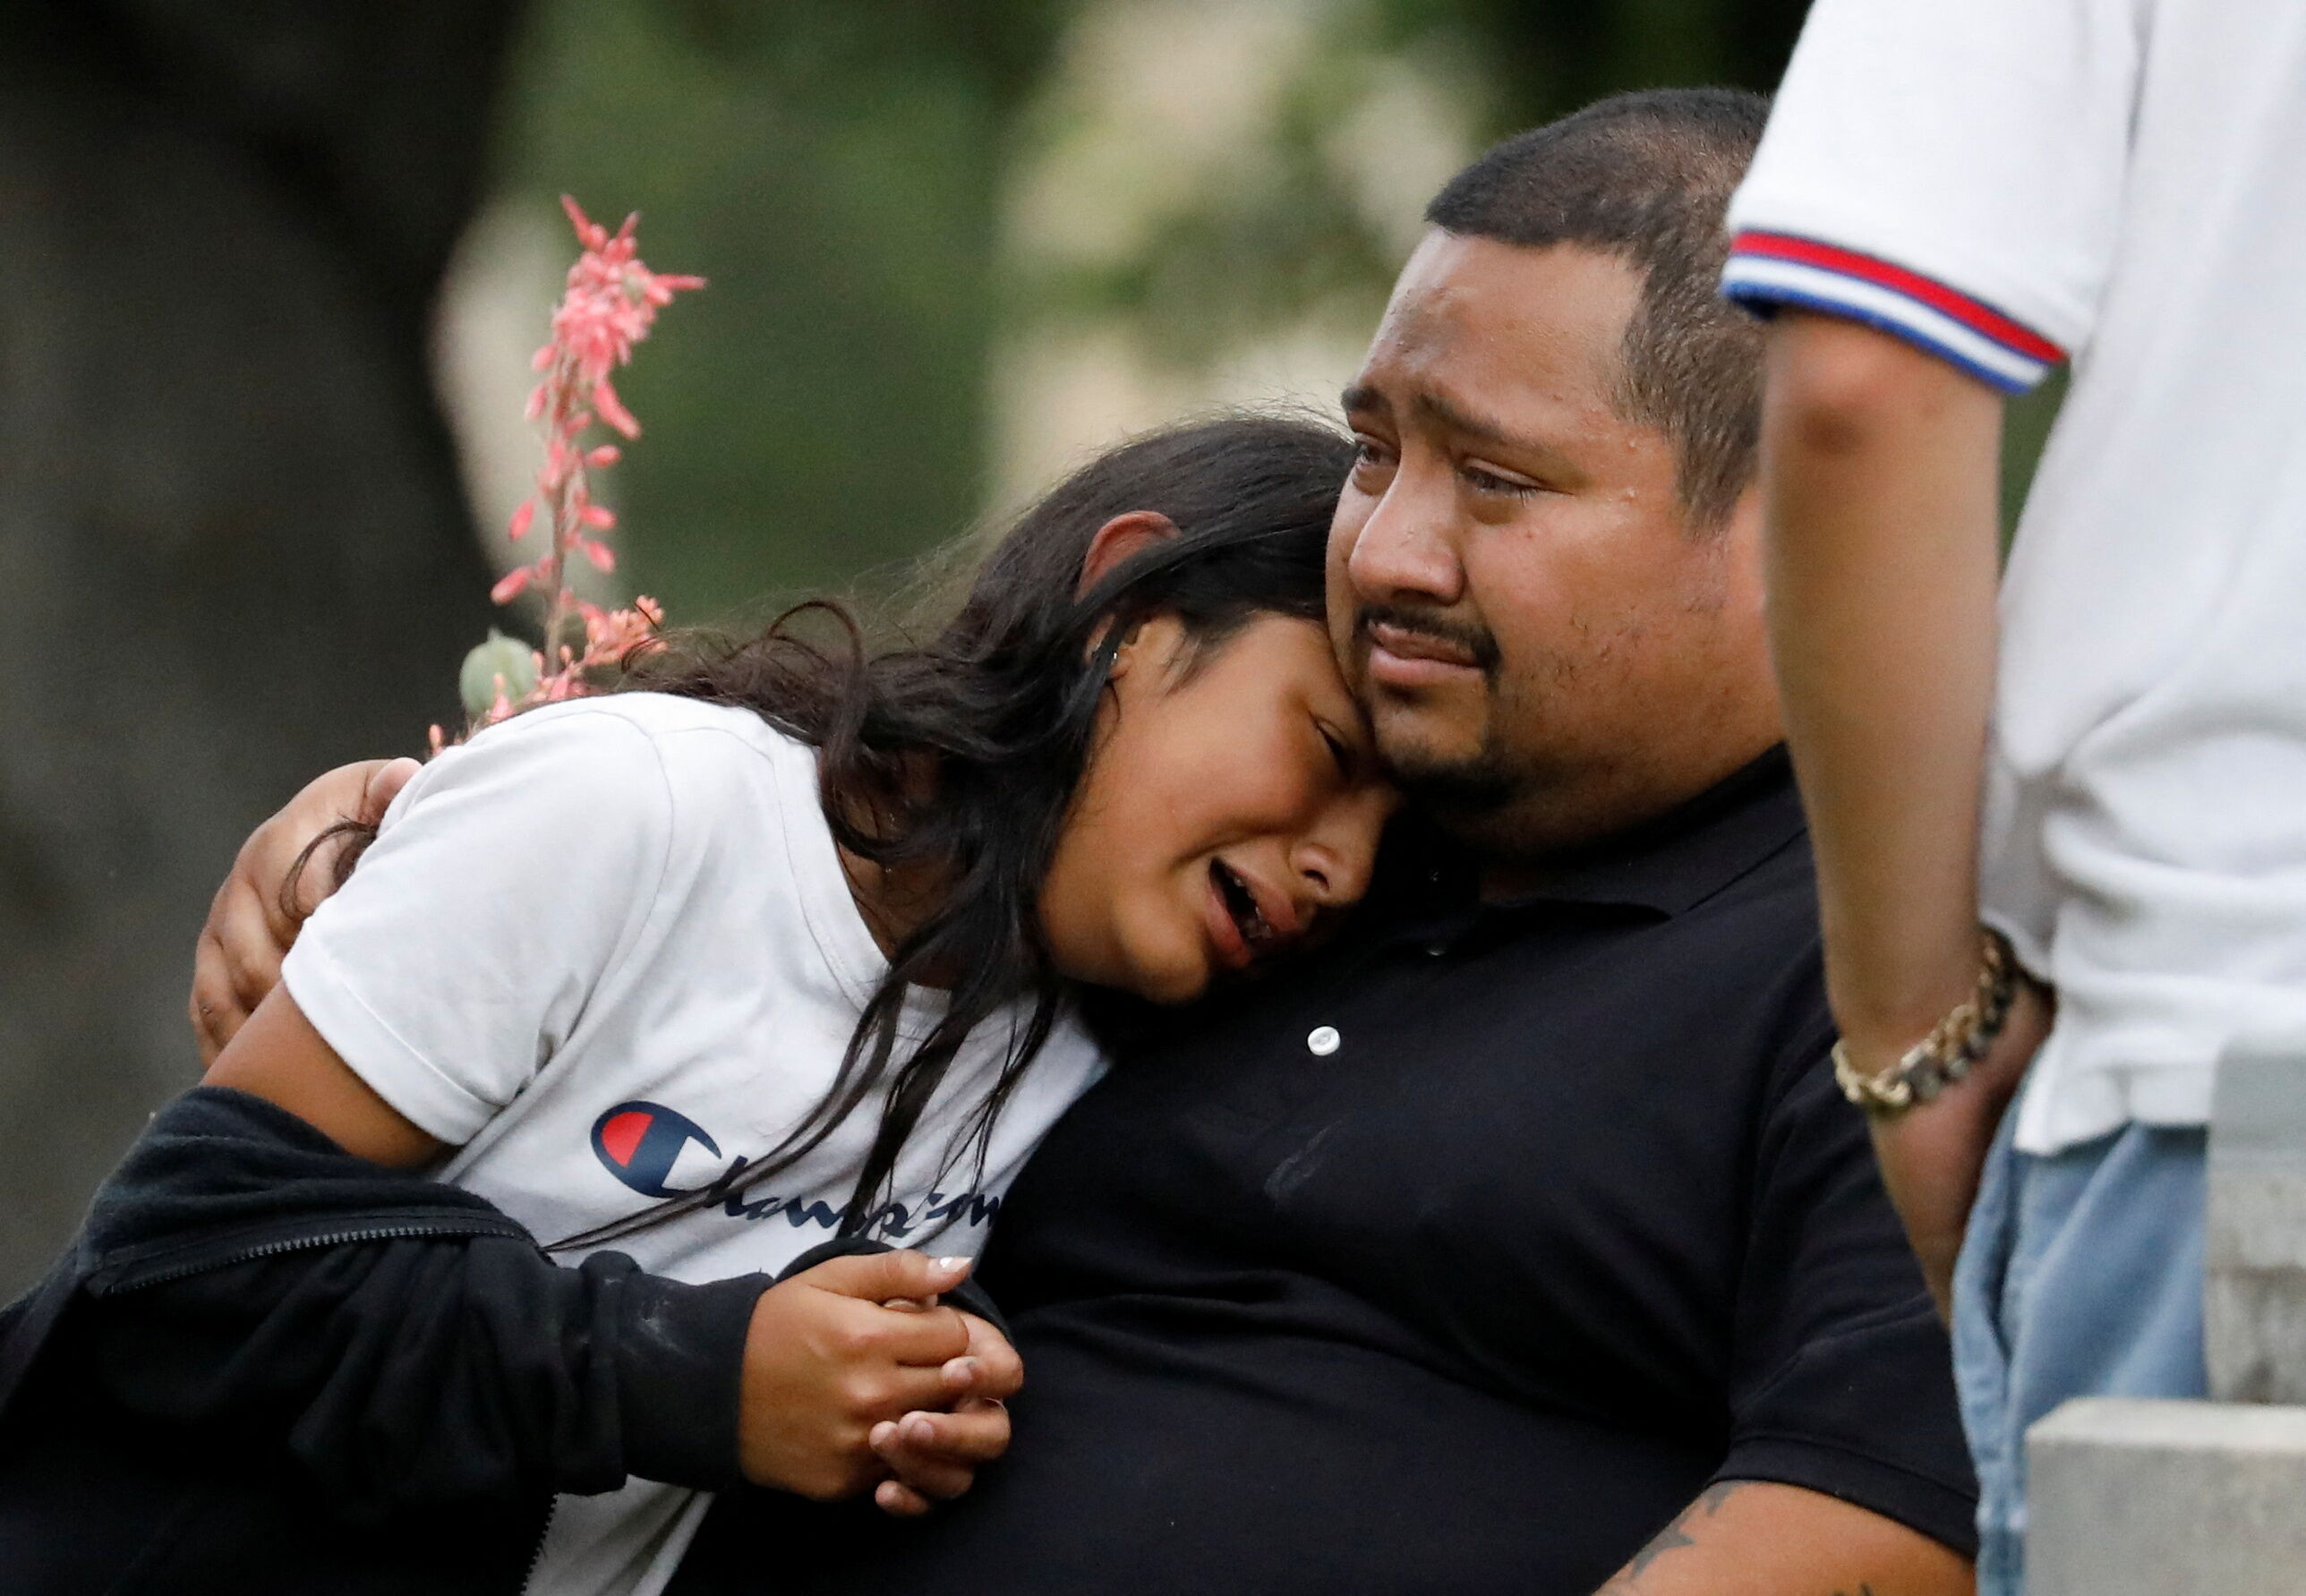 Familiares de los alumnos de la escuela de Uvalde, en Texas, lloraban angustiados mientras esperaban a los pequeños que salieron ilesos tras el tiroteo ocurrido en mayo.